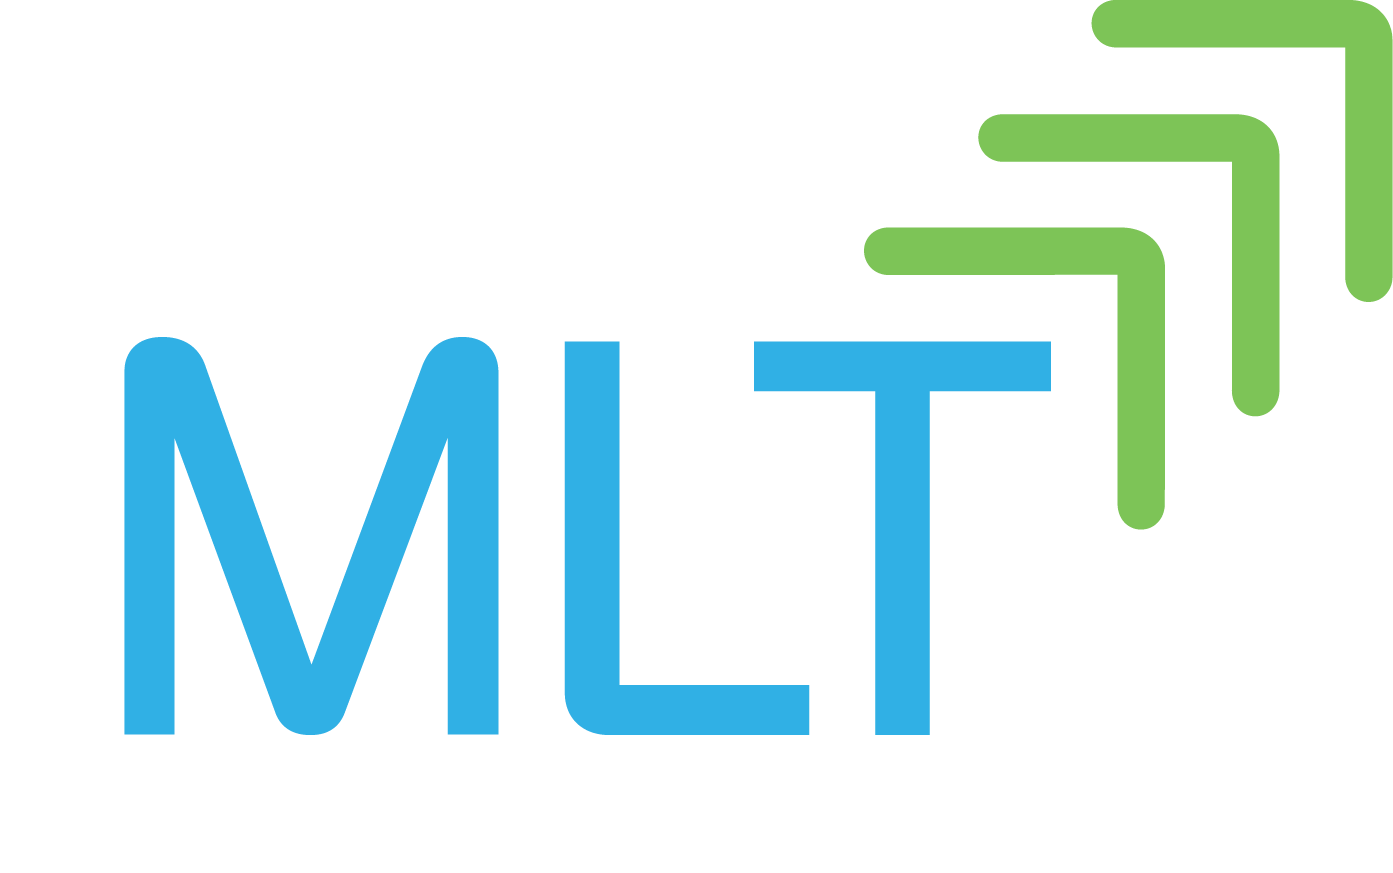 Mlt logo